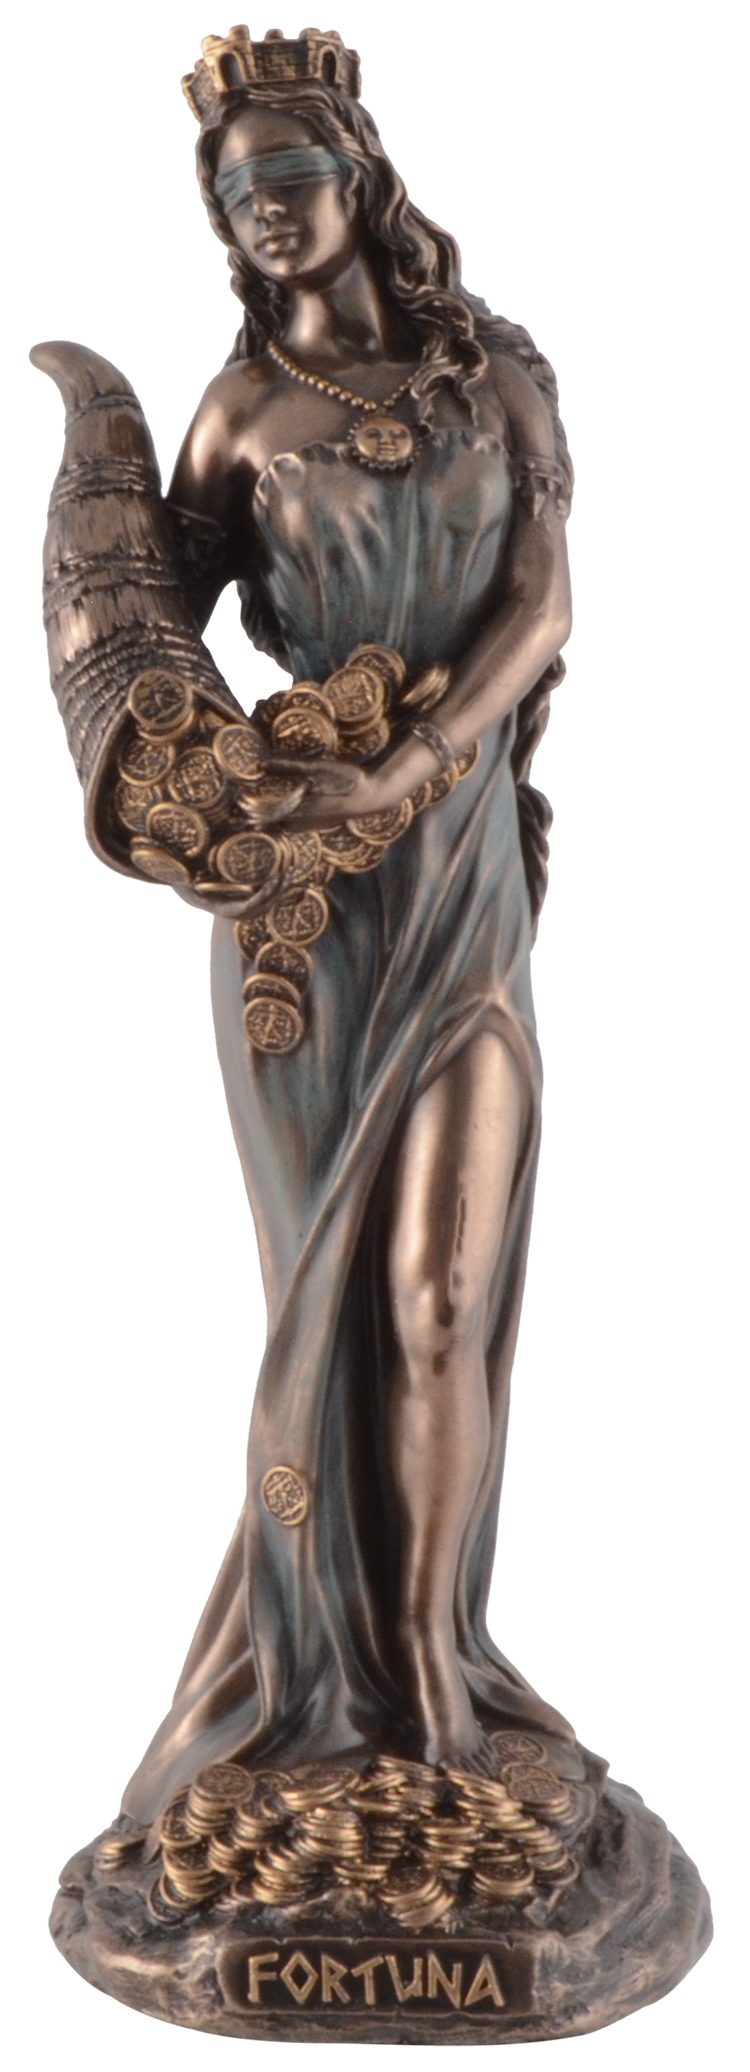 Vogler direct Gmbh Dekofigur Römische Göttin Fortuna, Veronesedesign, bronziert, coloriert, Größe: L/B/H ca. 6x6x16 cm | Dekofiguren